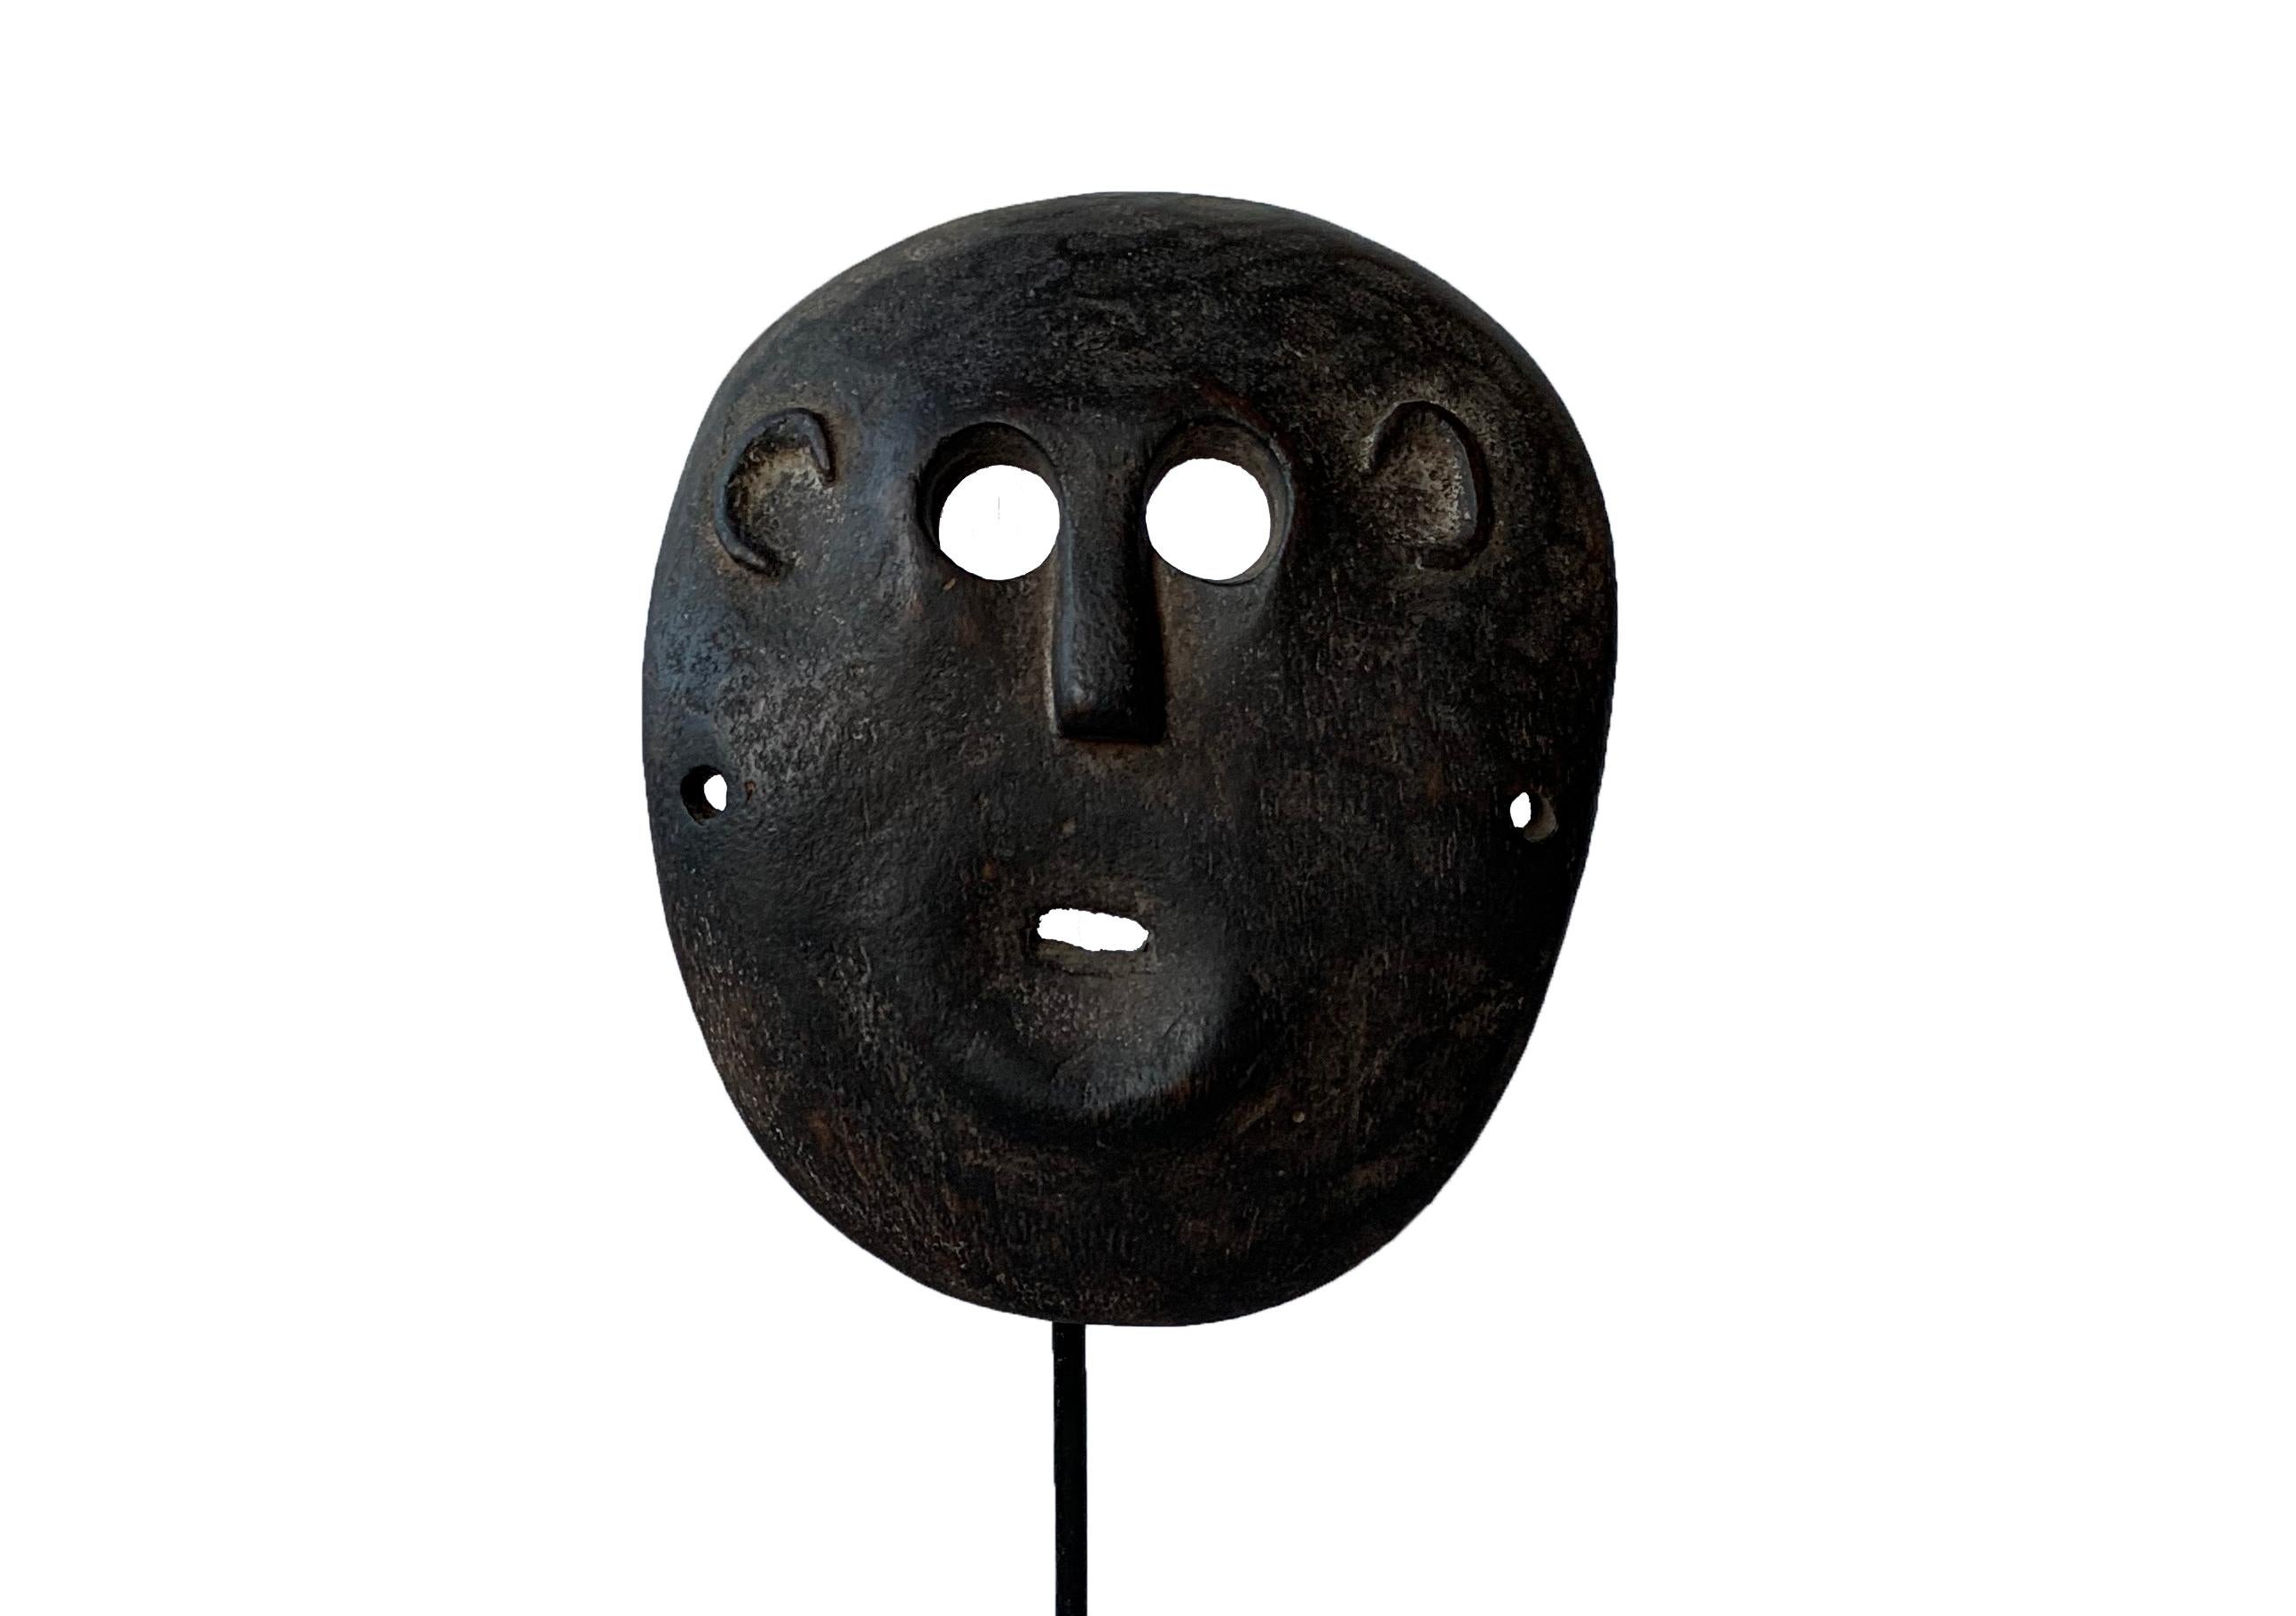 Esta máscara muy plana procede del pueblo atoni de Timor. Para los timorenses, las máscaras representan antepasados masculinos y femeninos, y las llevan los guerreros para ahuyentar a los enemigos o durante las ceremonias. En Timor, las máscaras